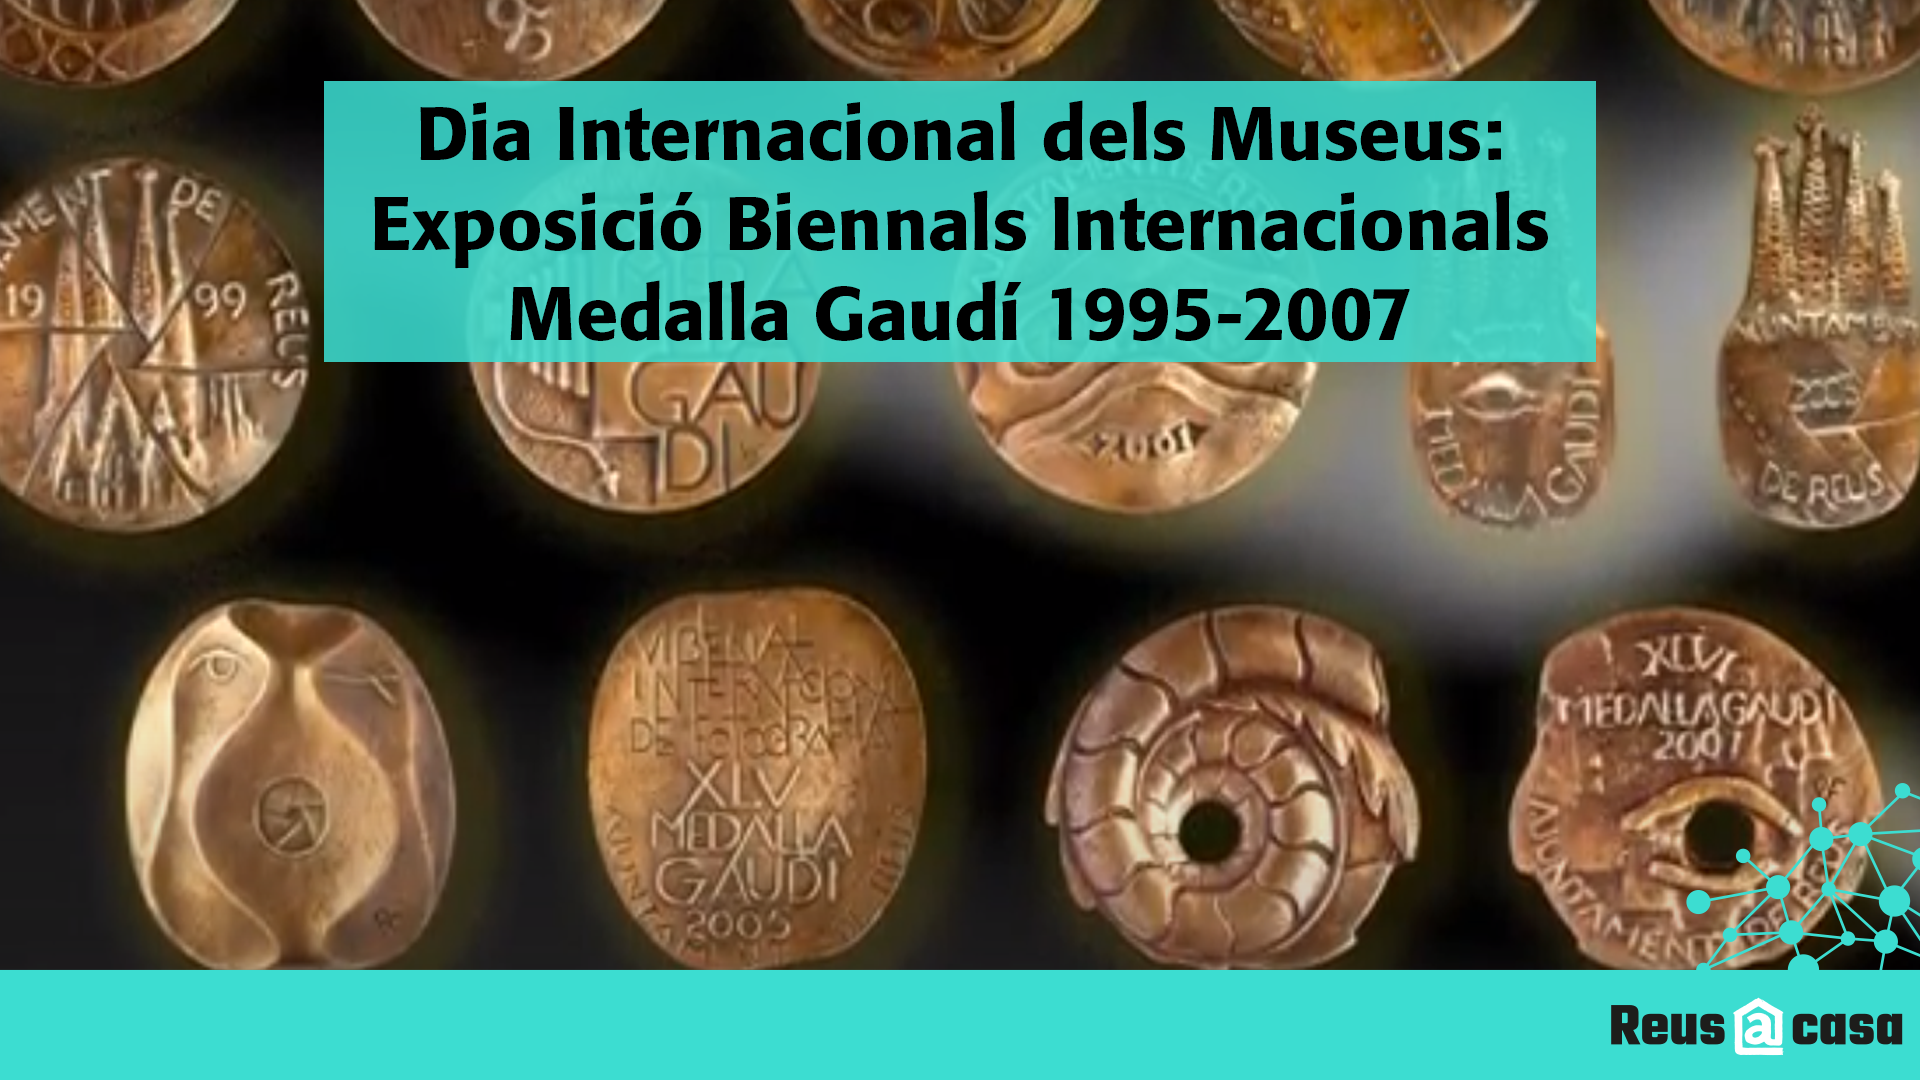 Dia Internacional dels Museus: Exposició Biennals Internacionals Medalla Gaudí 1995-2007